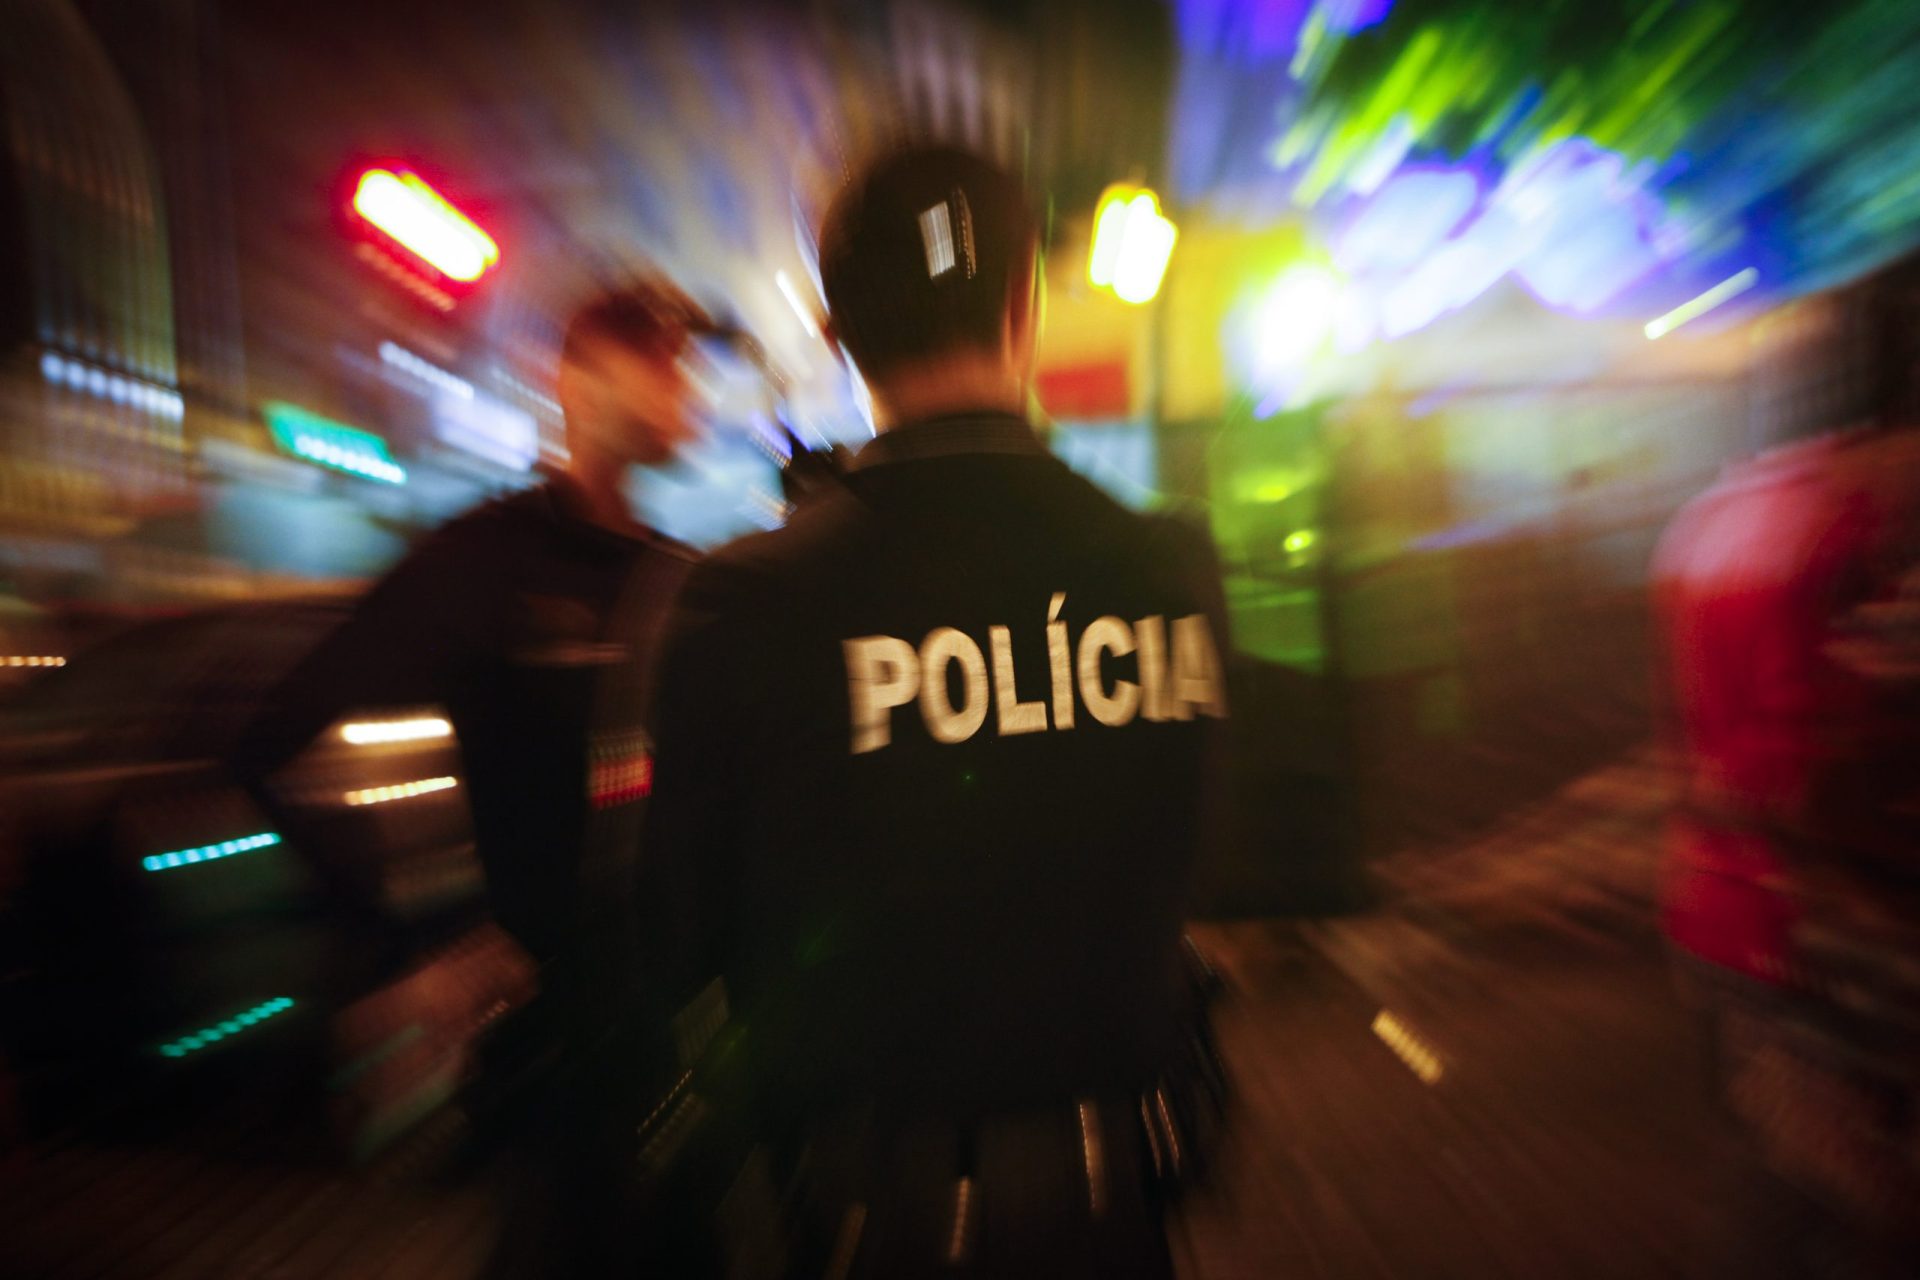 Falta de polícias? “O problema é o envelhecimento na Administração Pública”